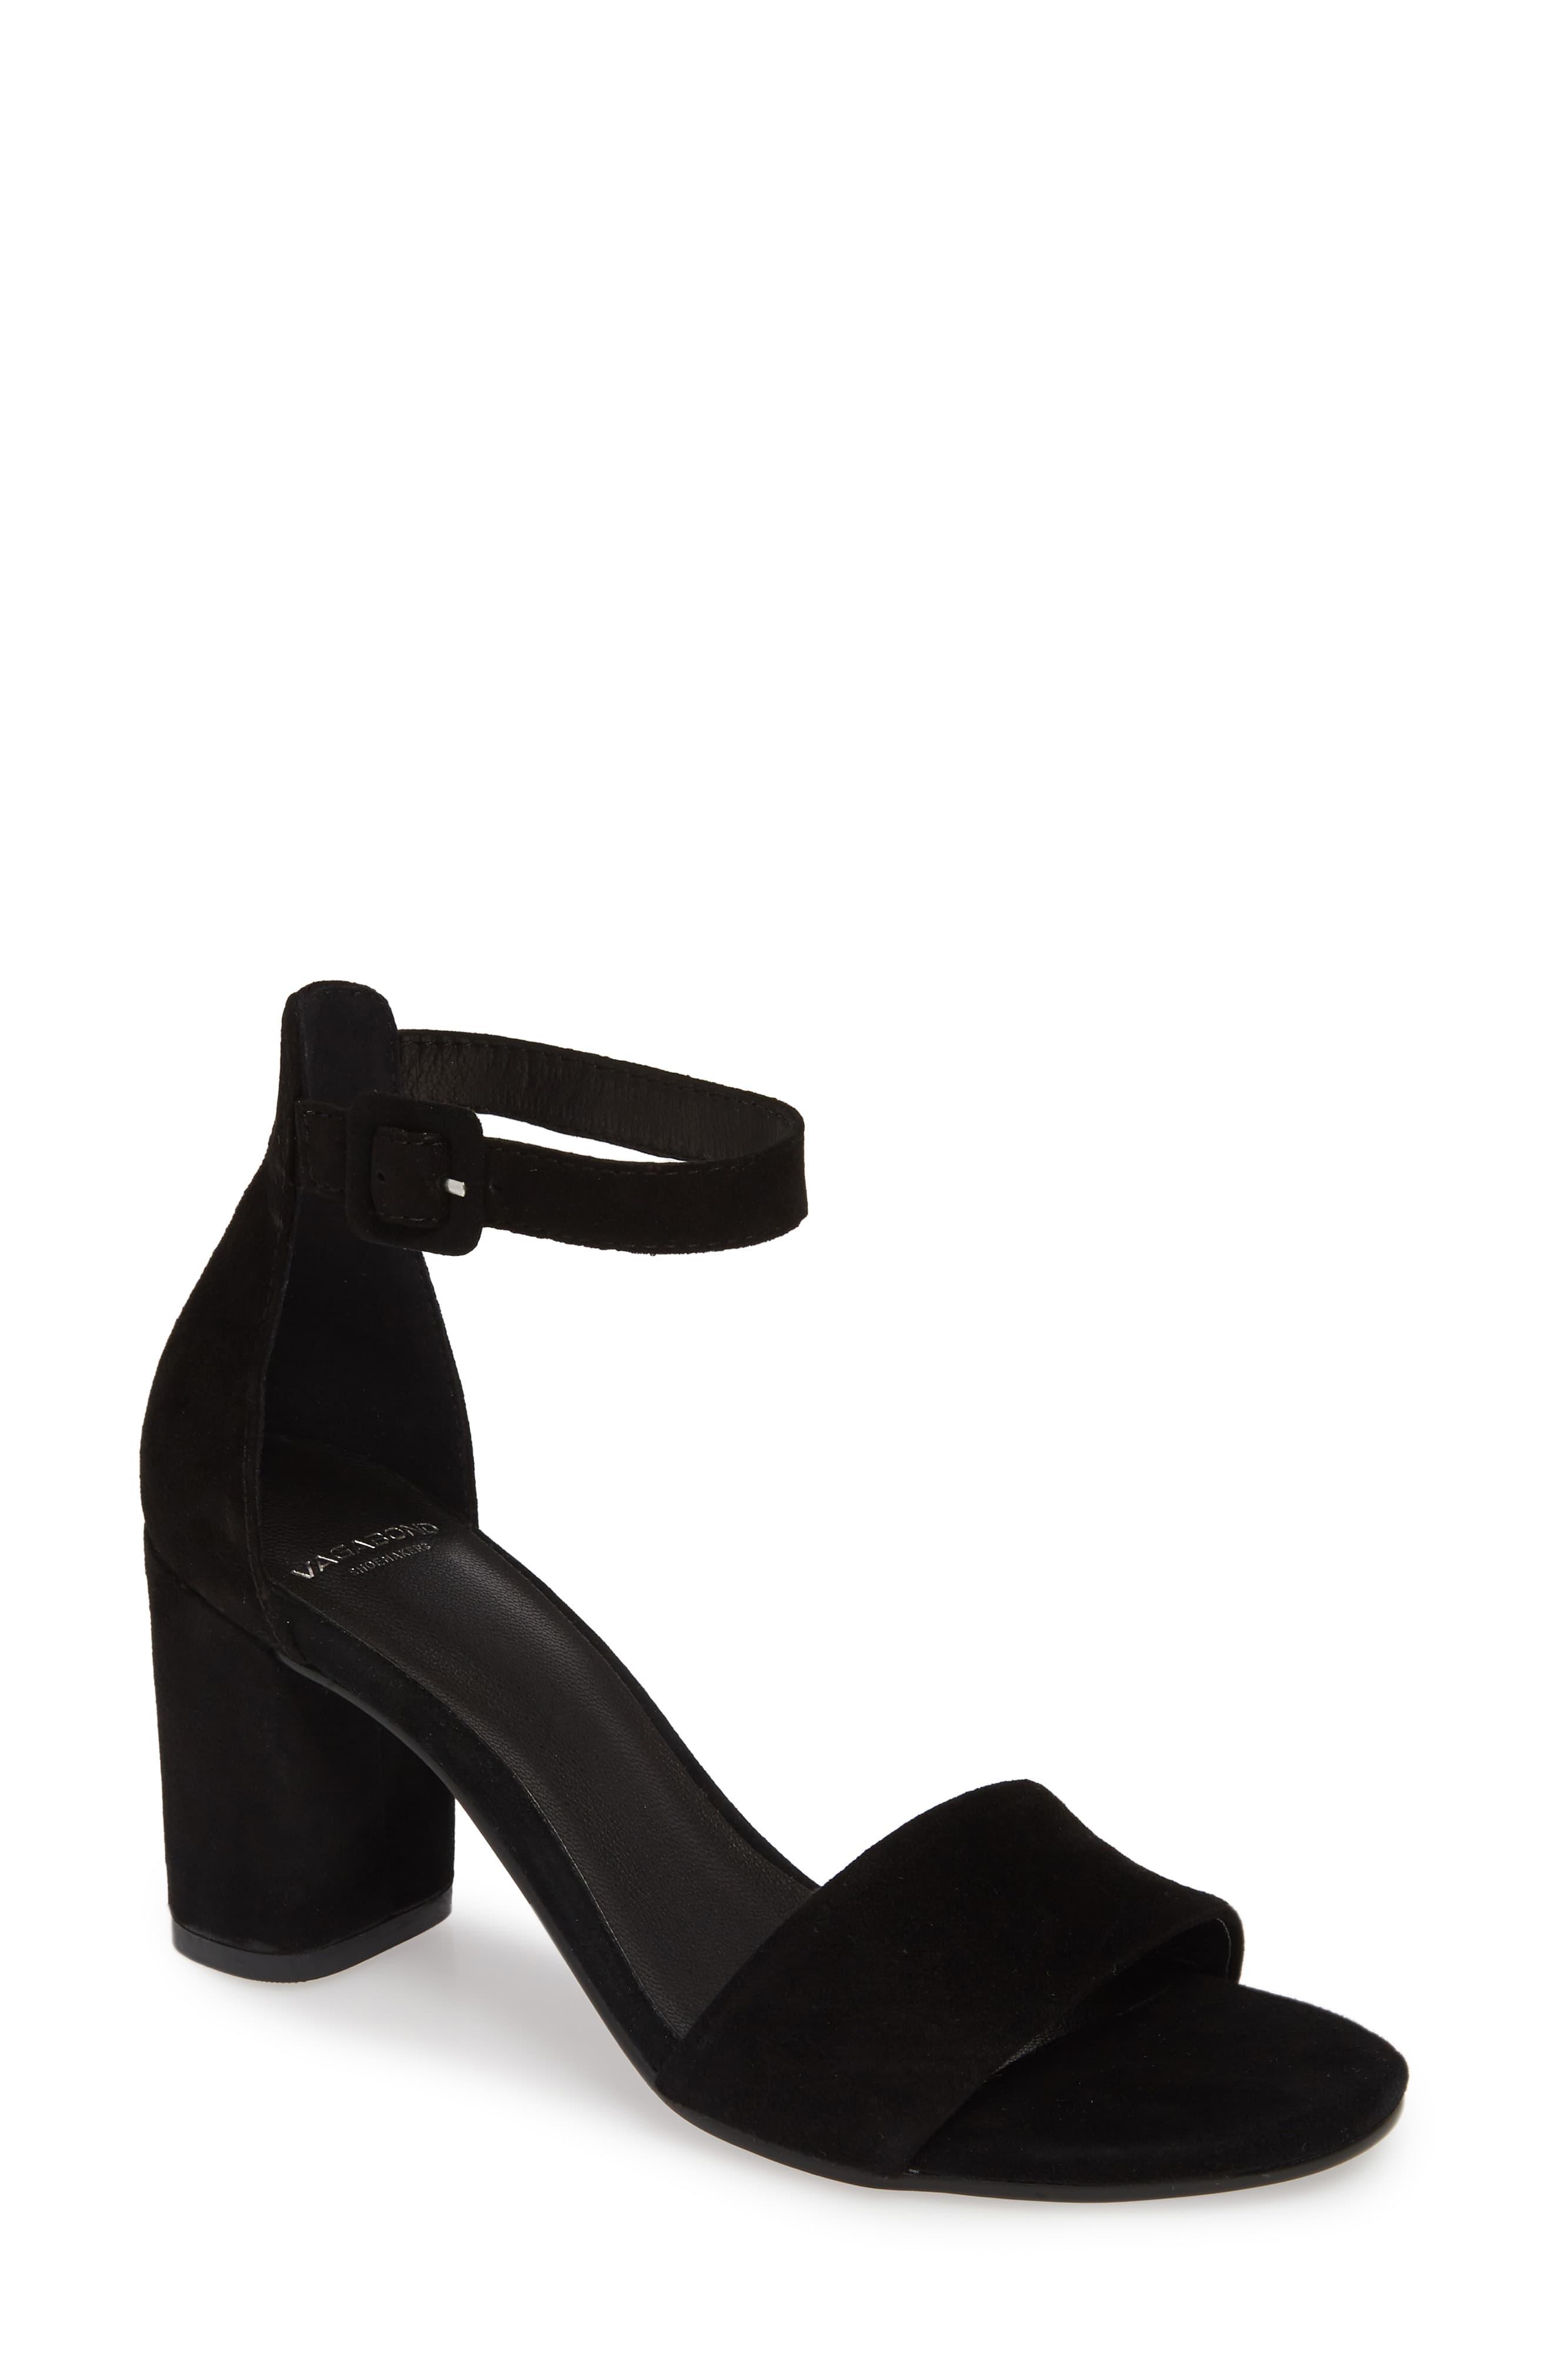 Vagabond Penny Ankle Strap Sandal in Black Suede (Black) - Lyst